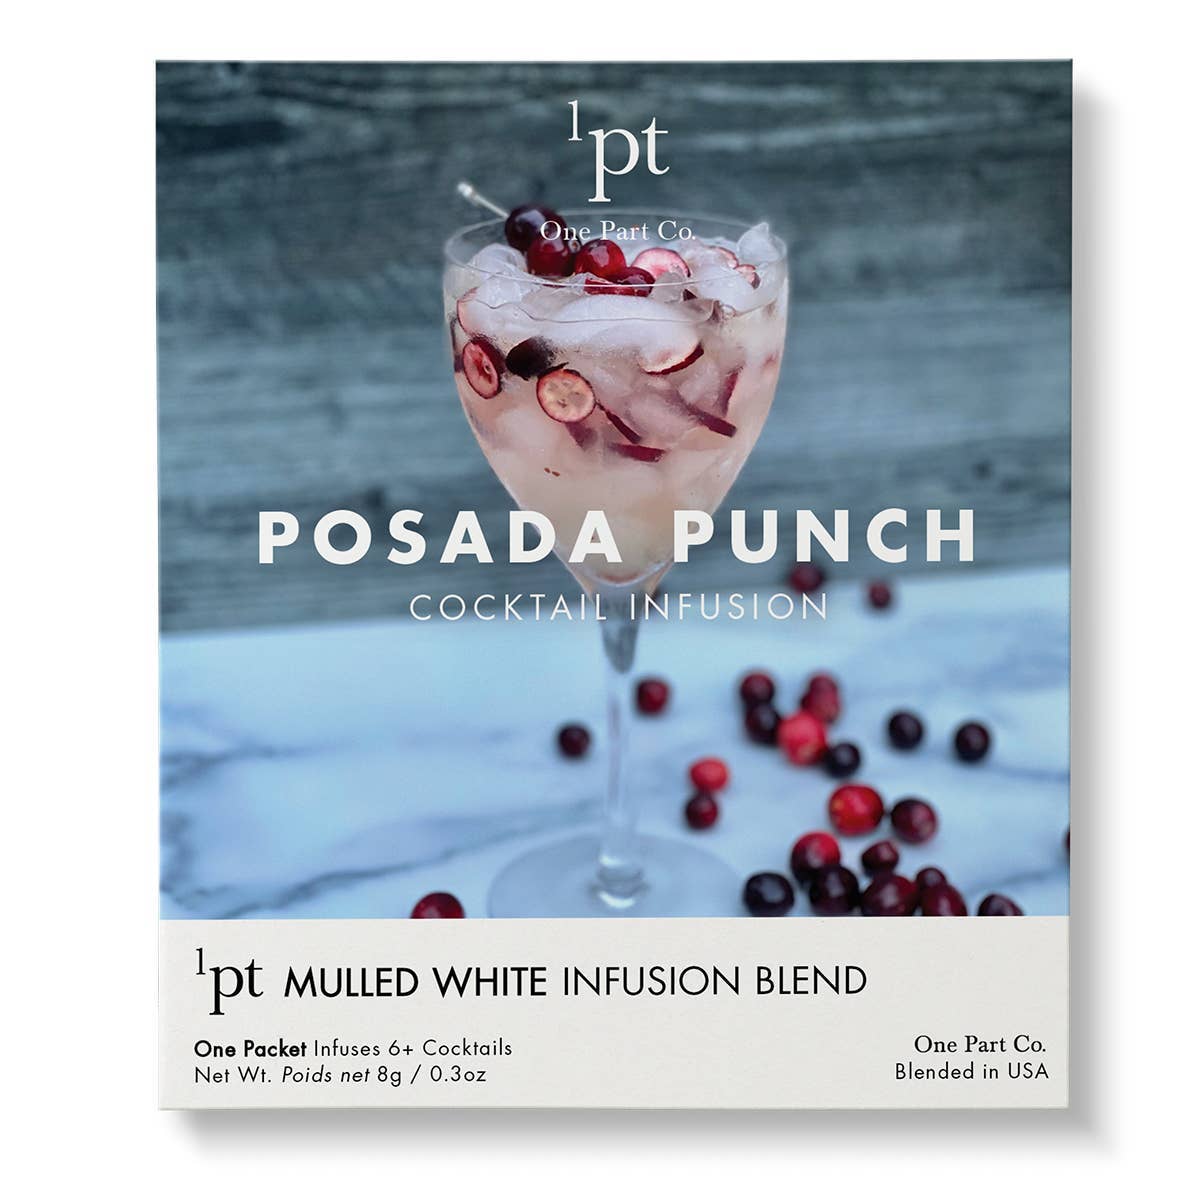 1pt Posada Punch Cocktail Pack